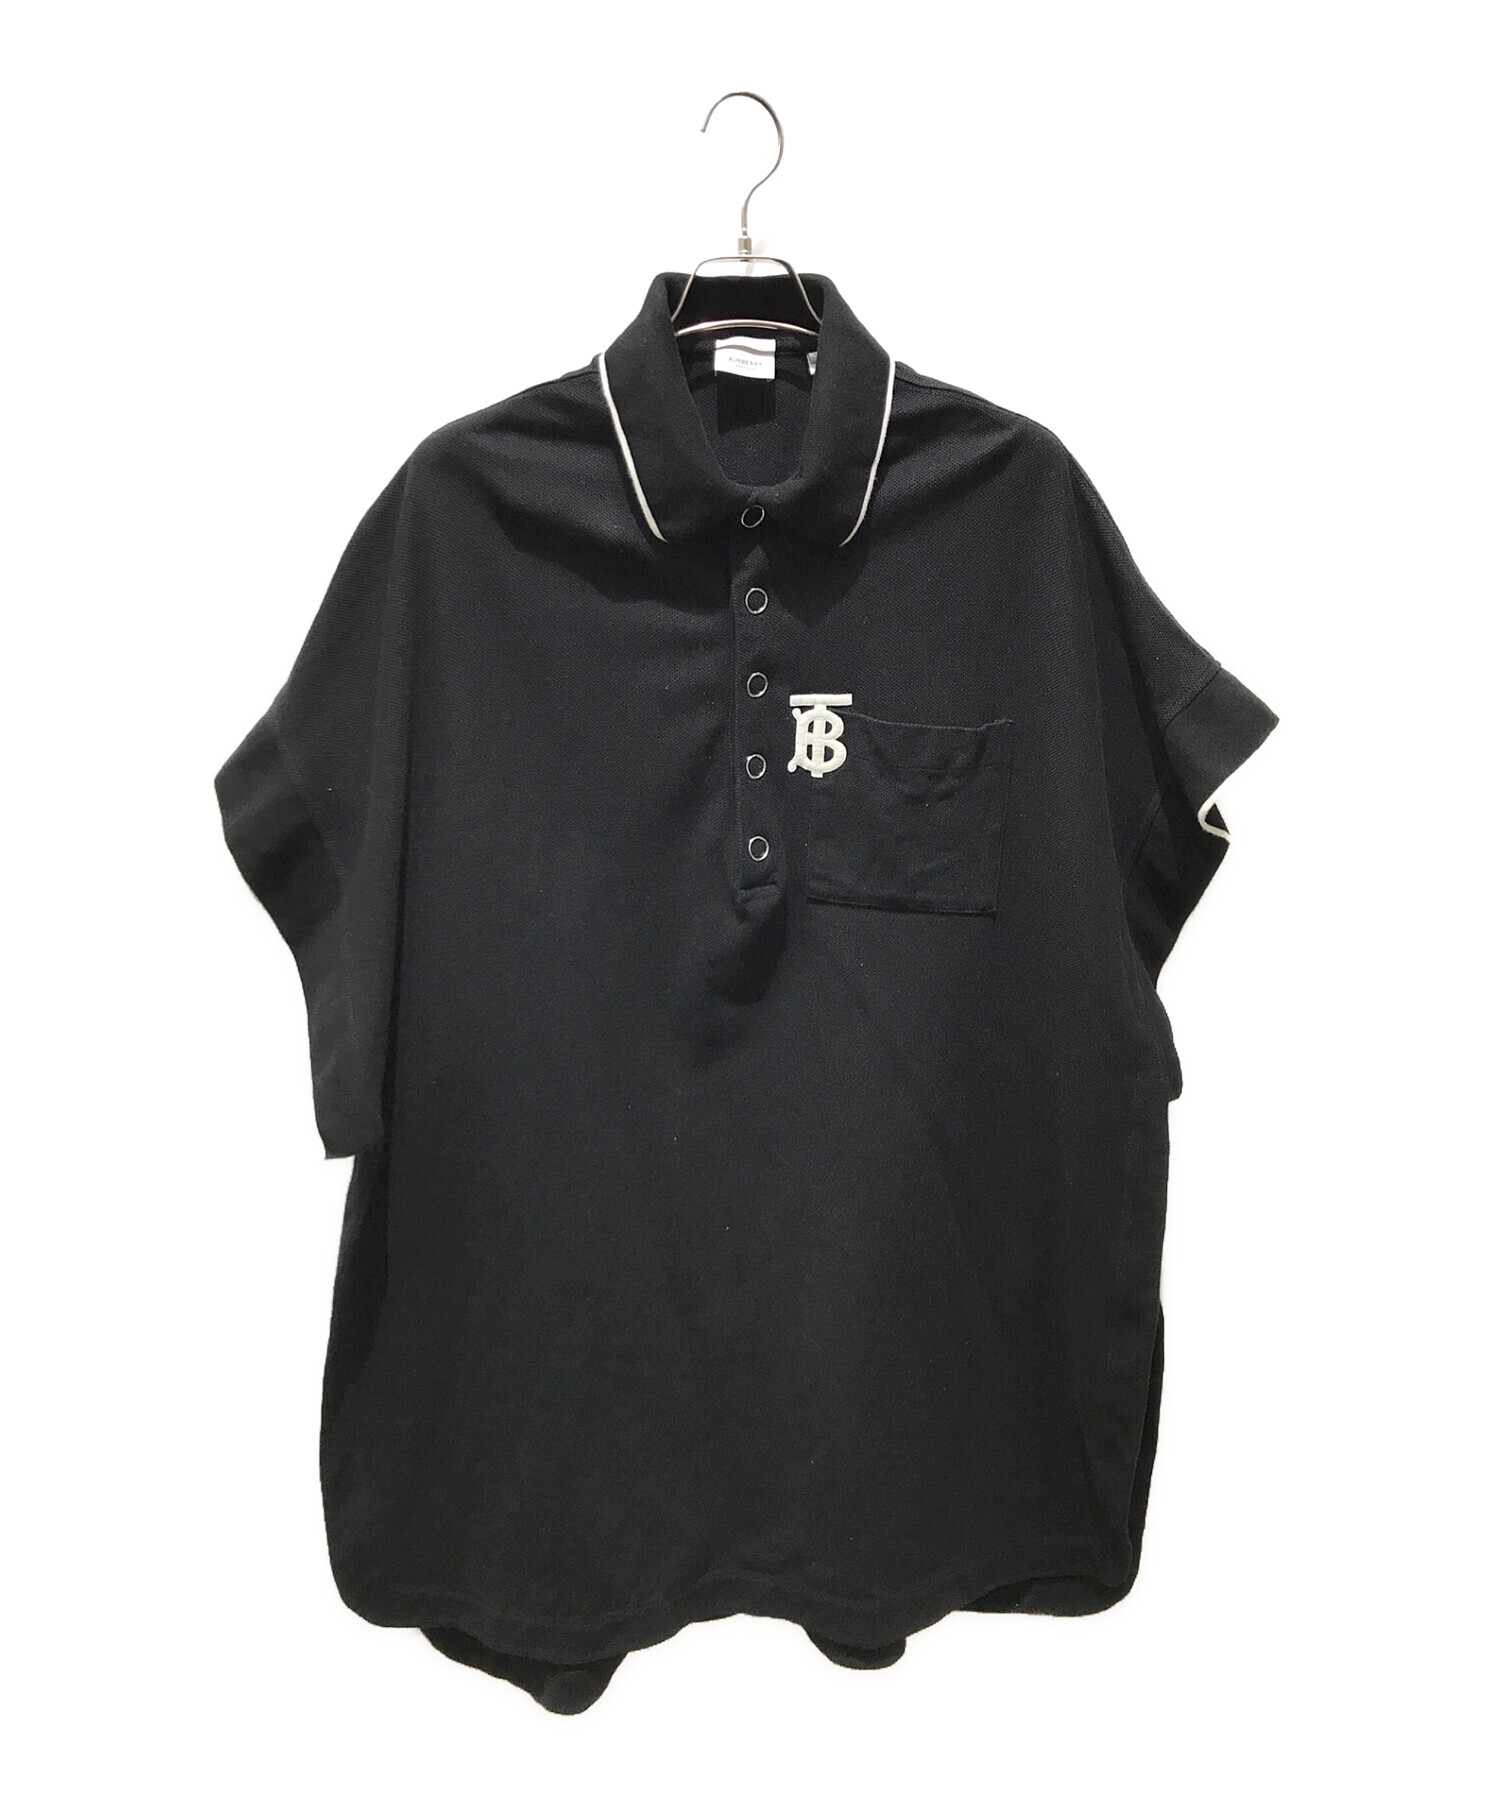 SALE!☆ BURBERRY レディース ポロシャツ Black S - ポロシャツ